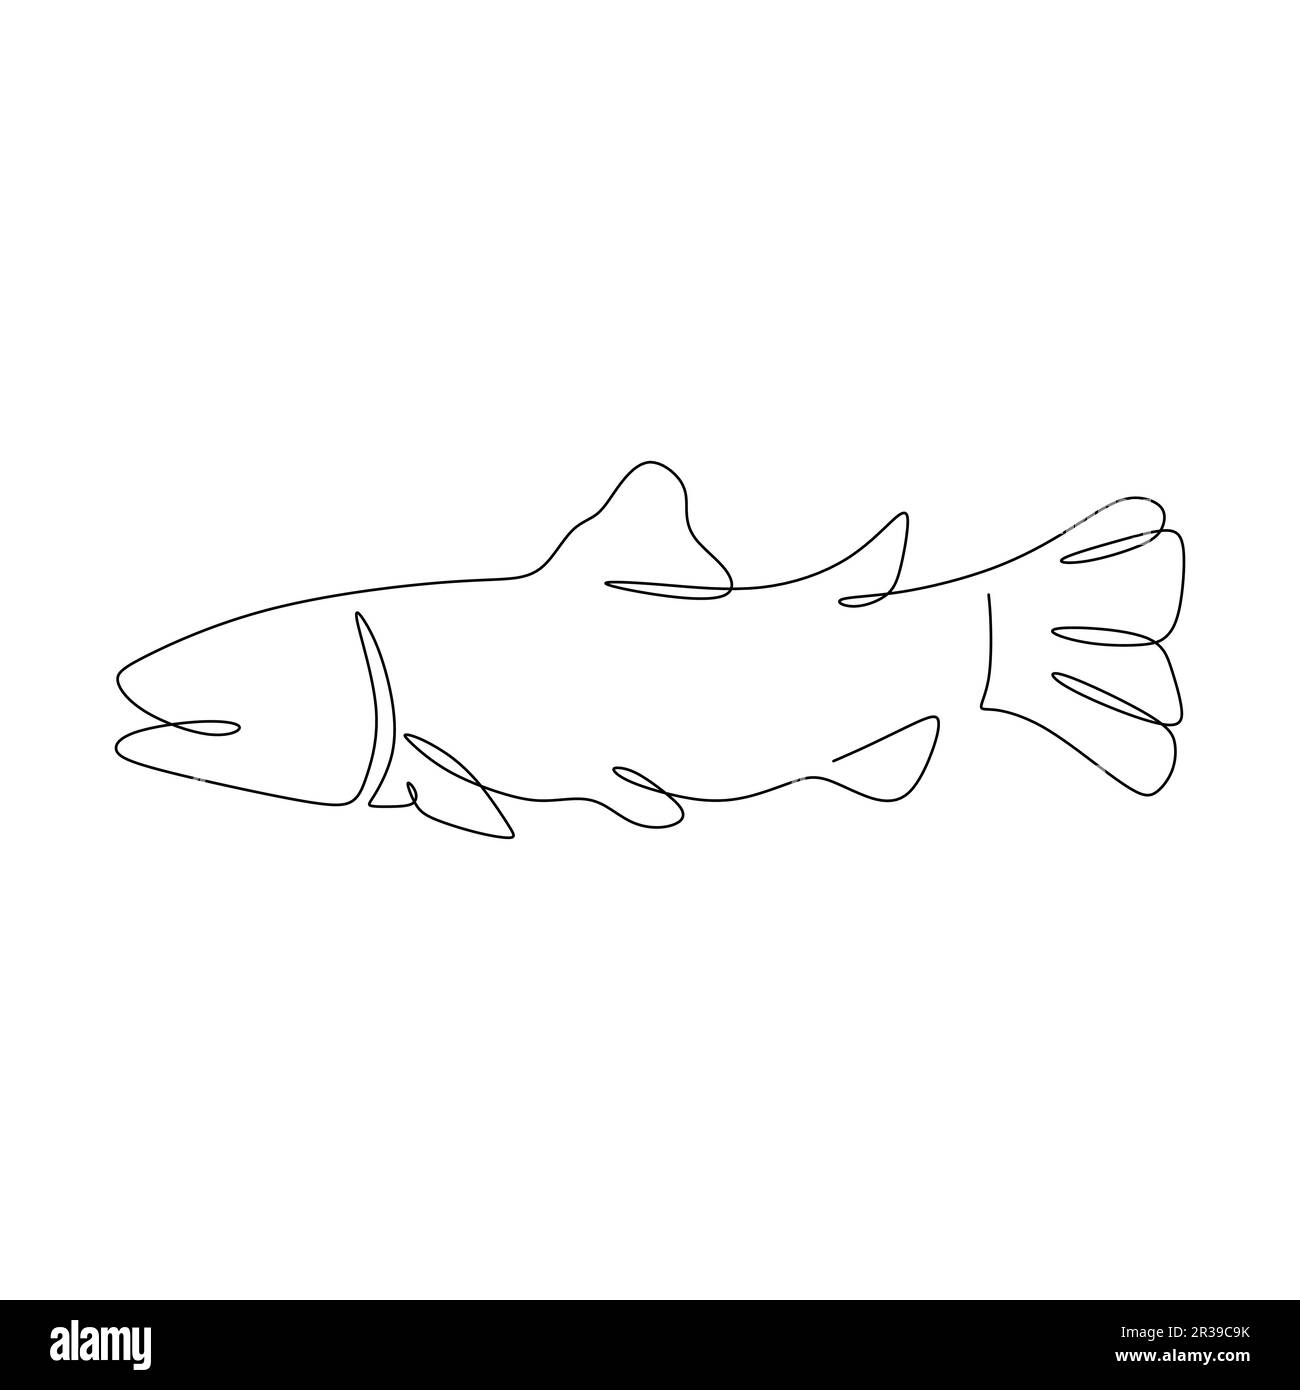 fish continu une ligne dessin illustration vectorielle isolée sur un fond blanc. Illustration de Vecteur